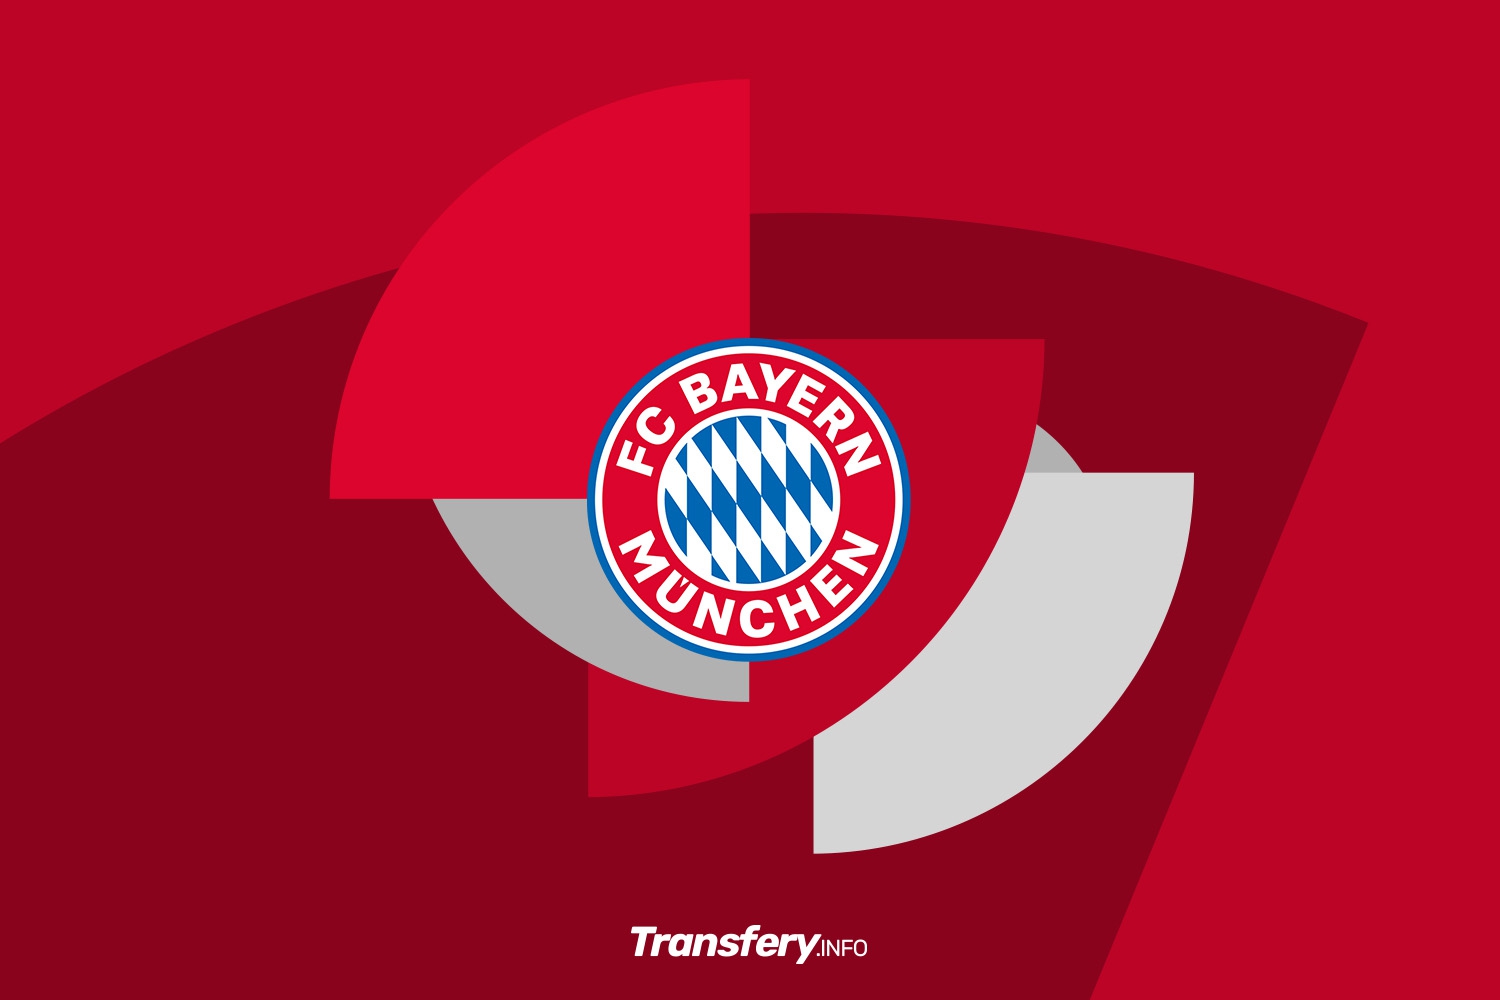 Bayern Monachium zrezygnował z utalentowanego pomocnika. Vincent Kompany nie wyraził zgody na transfer